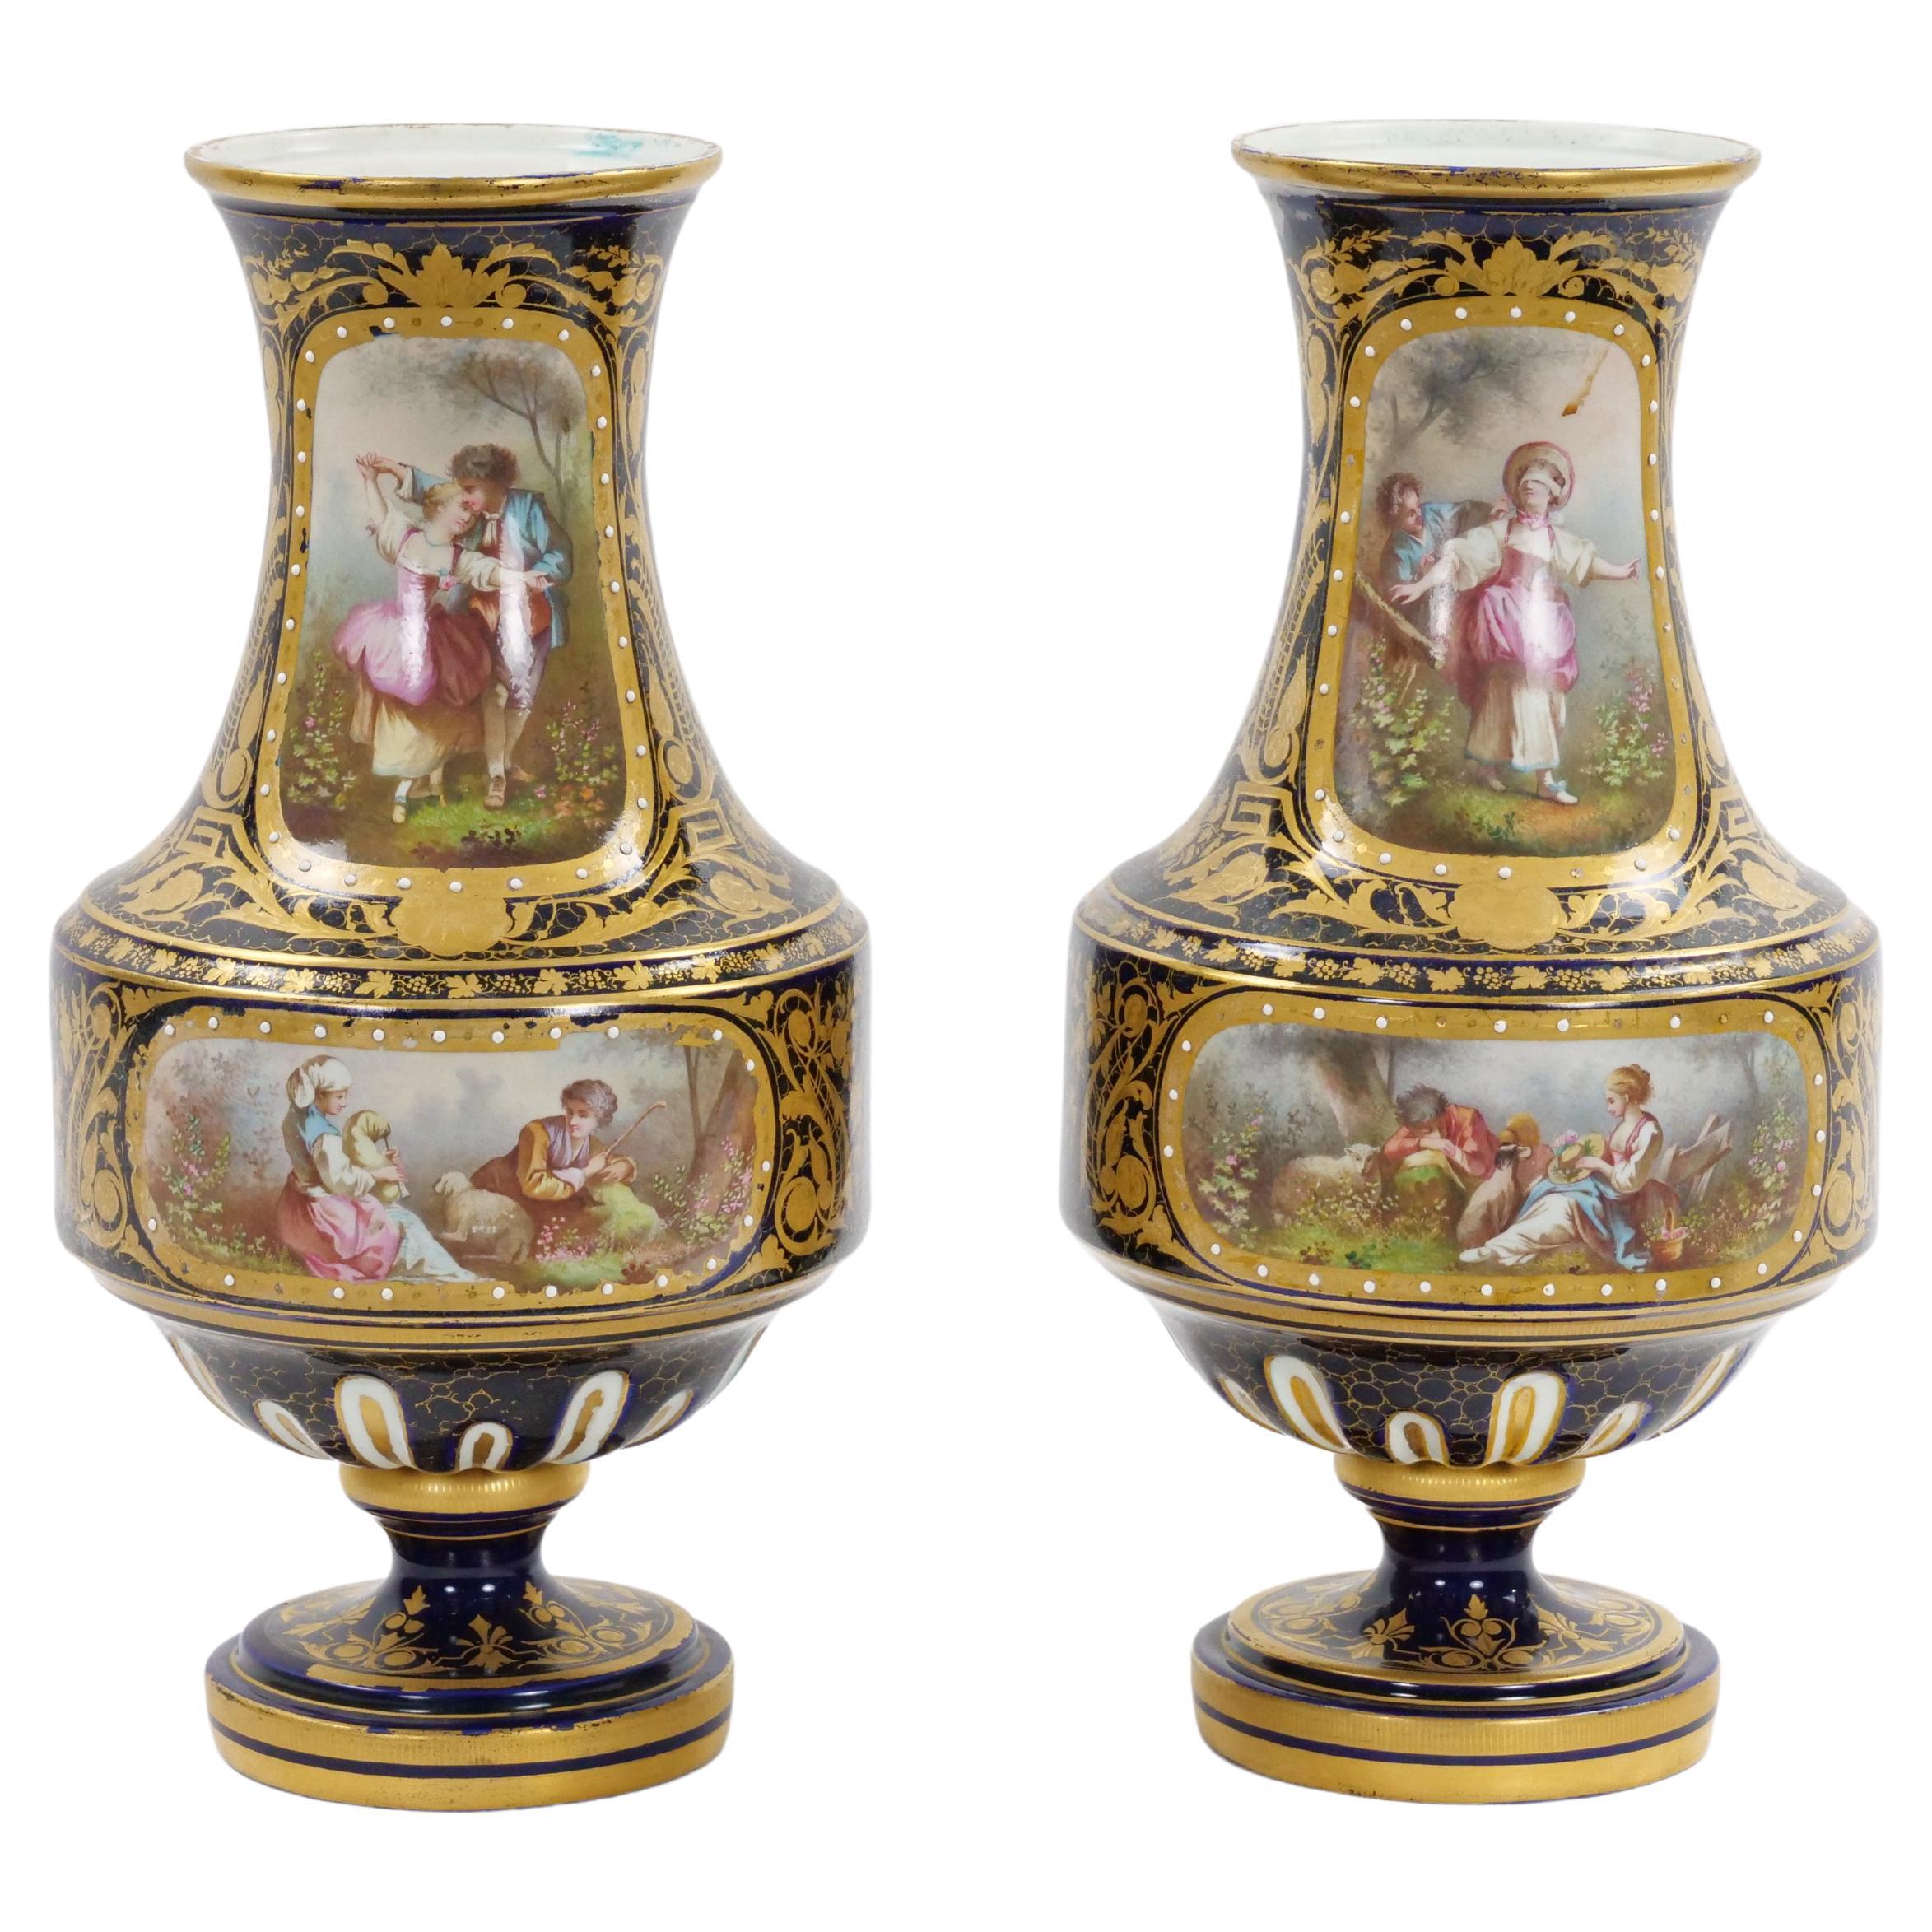 Paire de vases en porcelaine de Sèvres peinte à la main, style Louis XV, 19e siècle